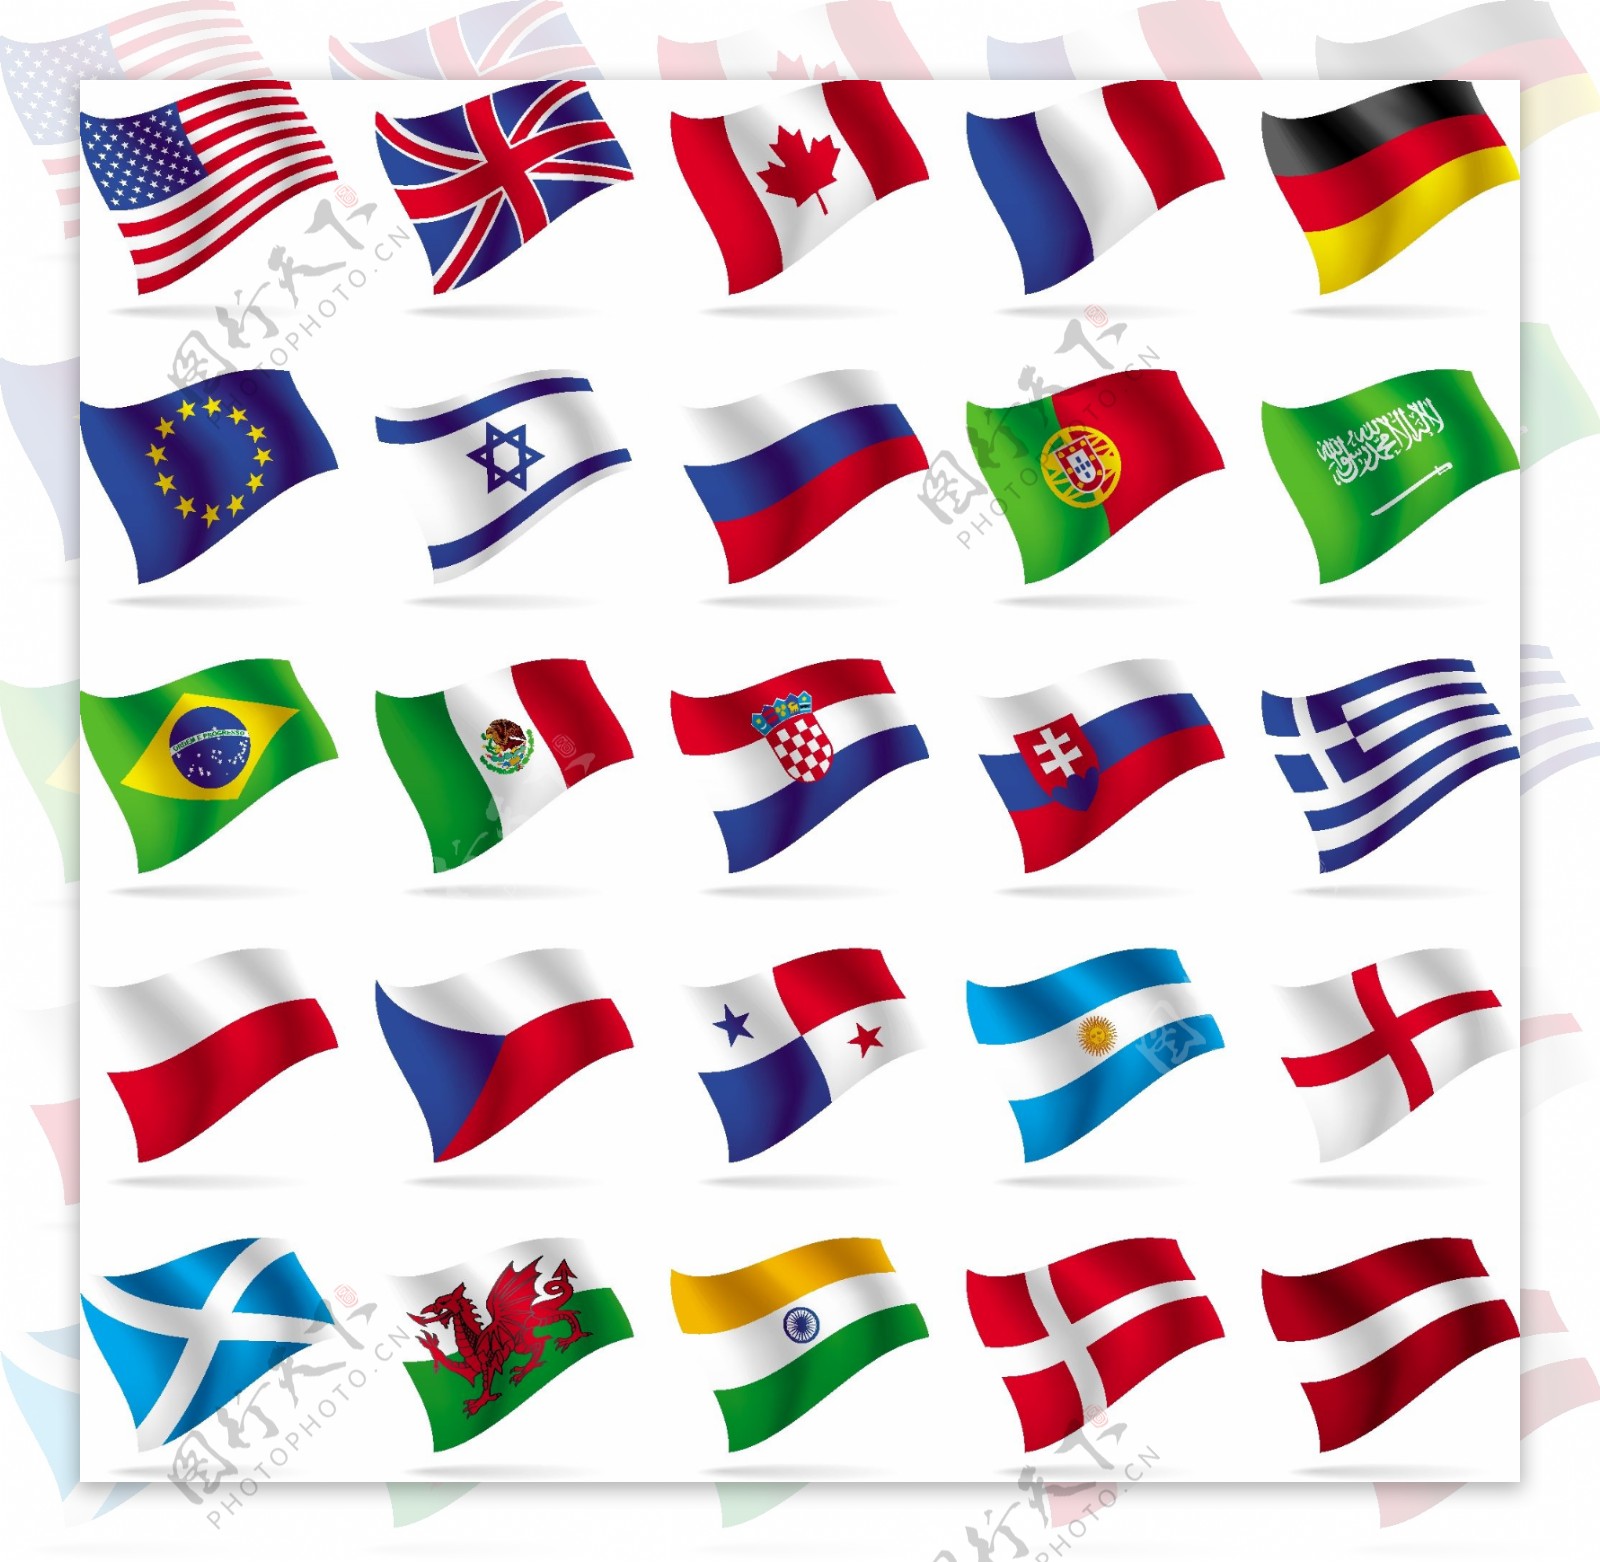 世界の主な国旗のセット 一覧表 イラスト イラスト素材 [ 6609884 ] - フォトライブラリー photolibrary